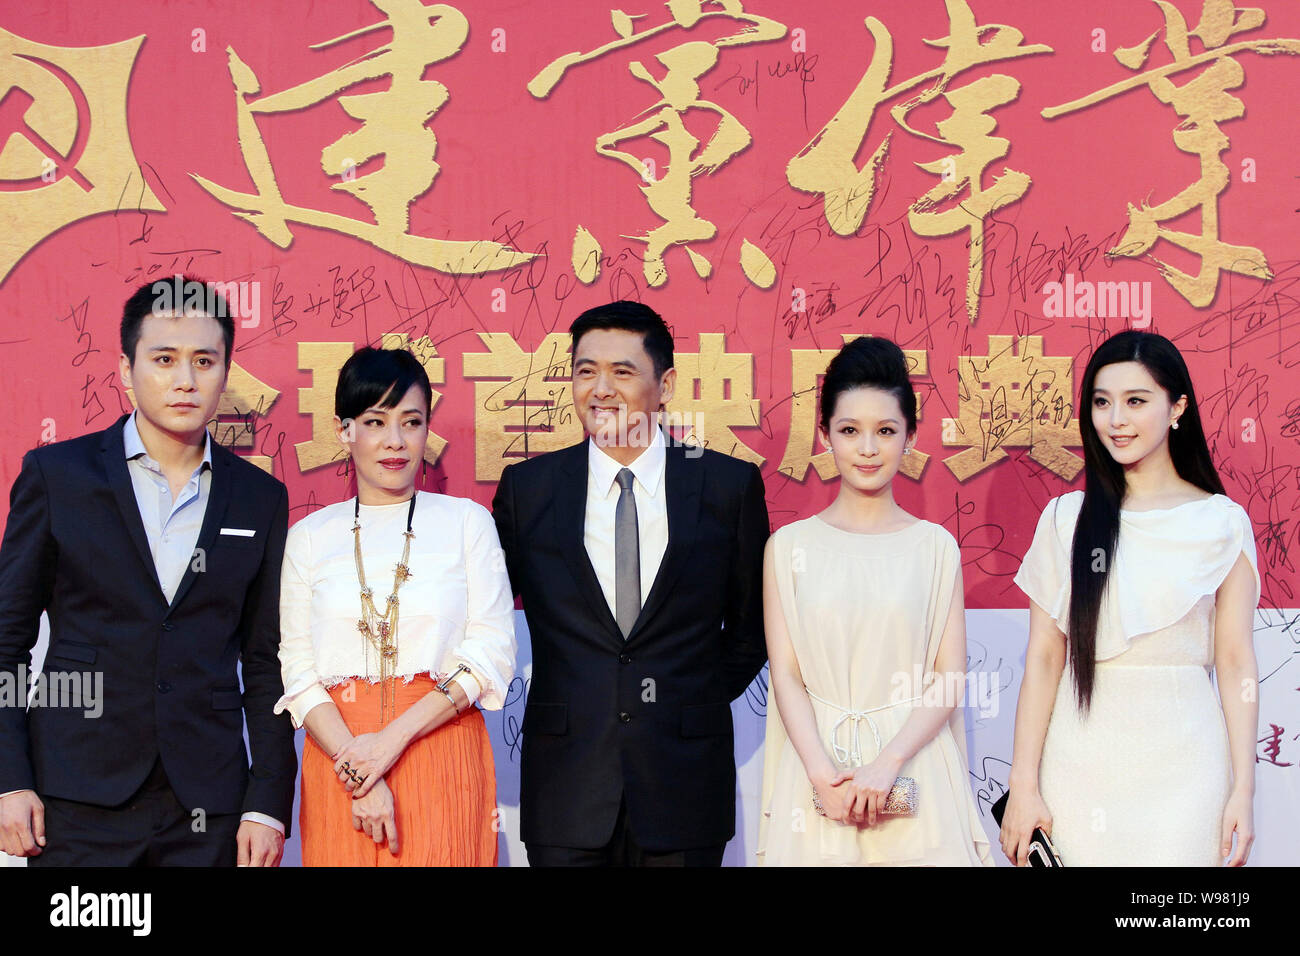 Chinese actor Liu Ye (L), Hong Kong actor Chow Yun-Fat (C) and Chinese actress Fan Bingbing attend the film premiere of the film Jian Dang Wei Ye (Beg Stock Photo